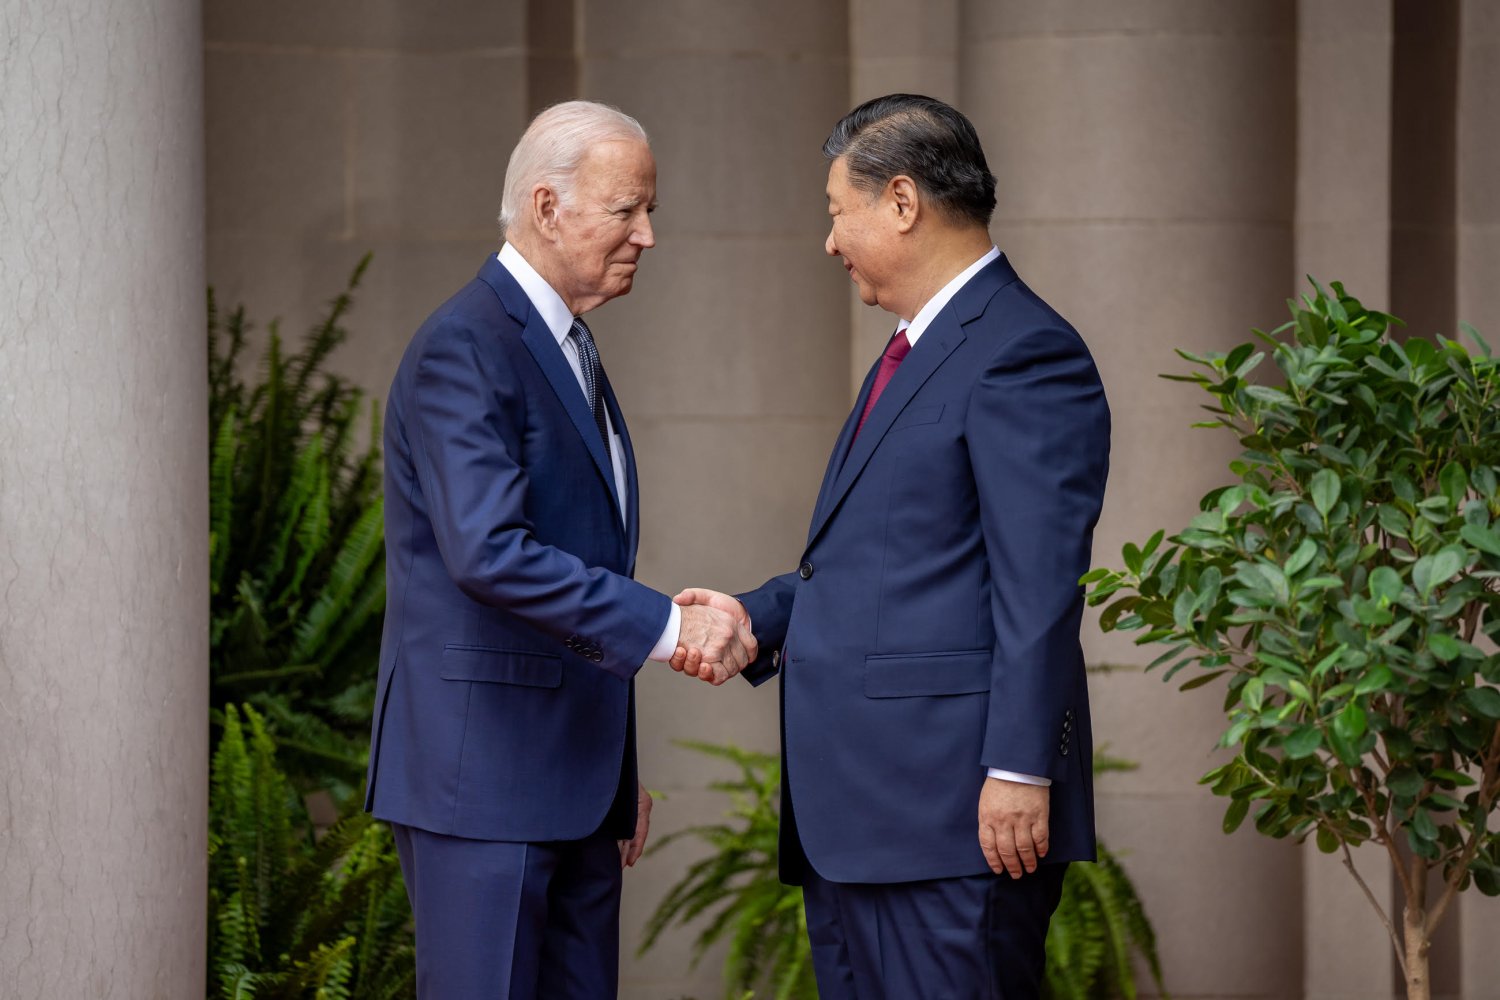 Rencontre Xi Jinping - Biden : derrière les déclarations, le conflit stratégique demeure